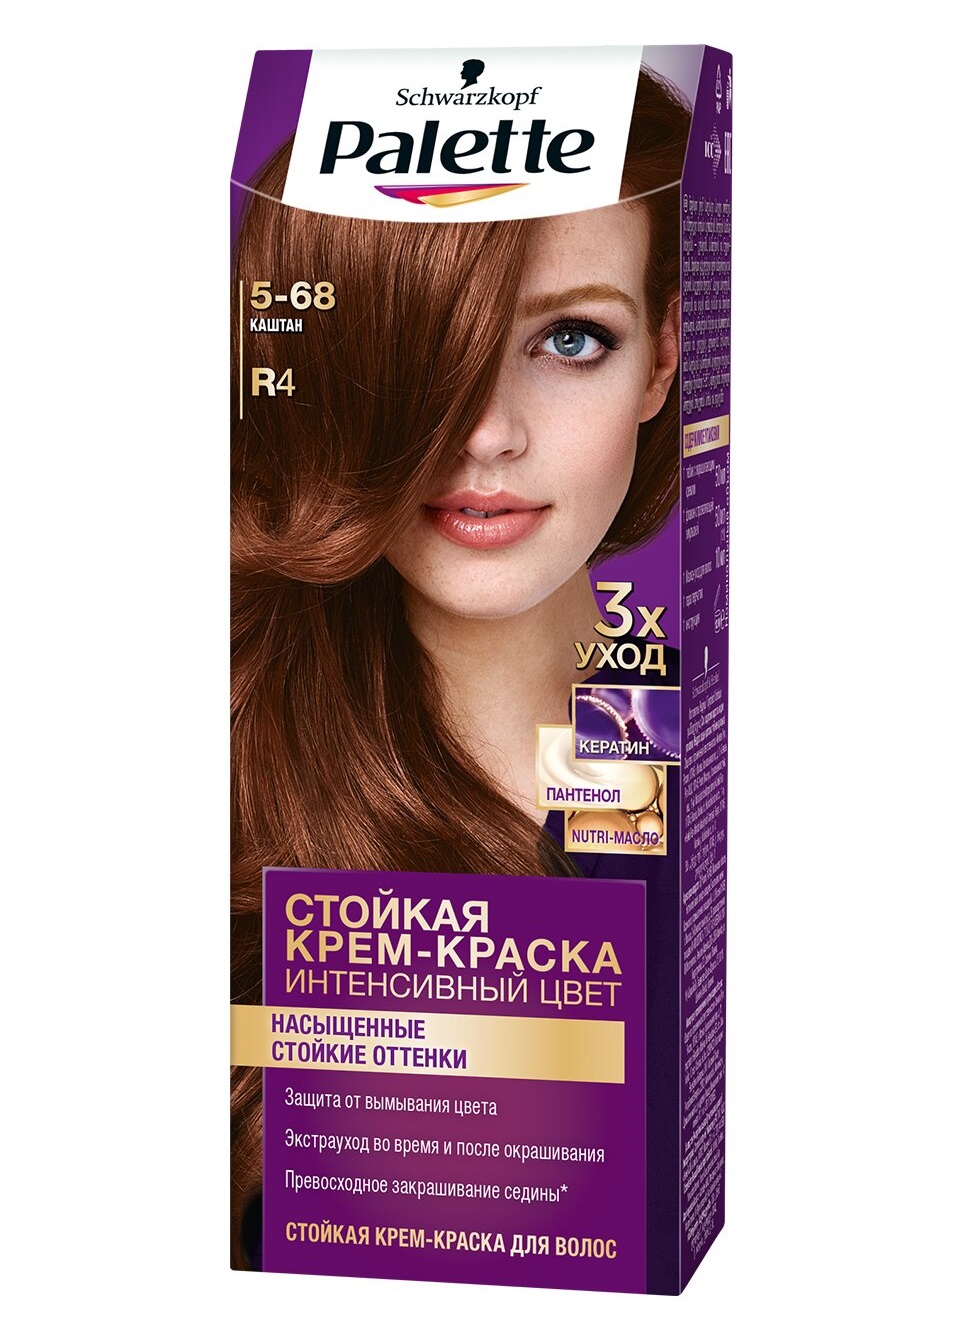 Крем-краска для волос Palette Интенсивный цвет 5-68 R4 Каштан 110 мл краска j maki 8nn светло русый интенсивный 60 мл